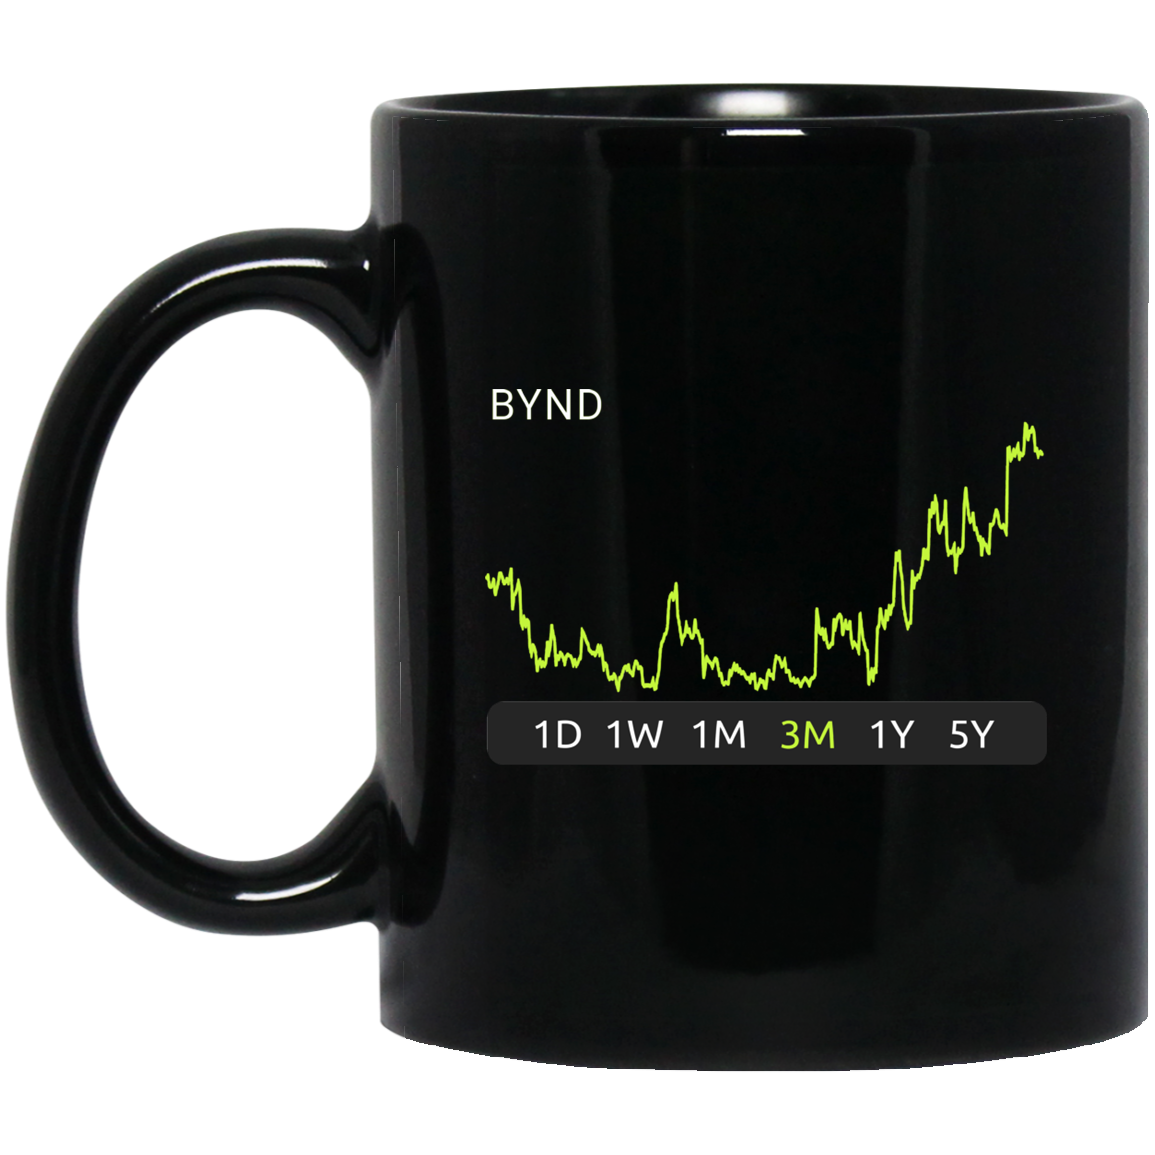 BYND Stock 3m Mug